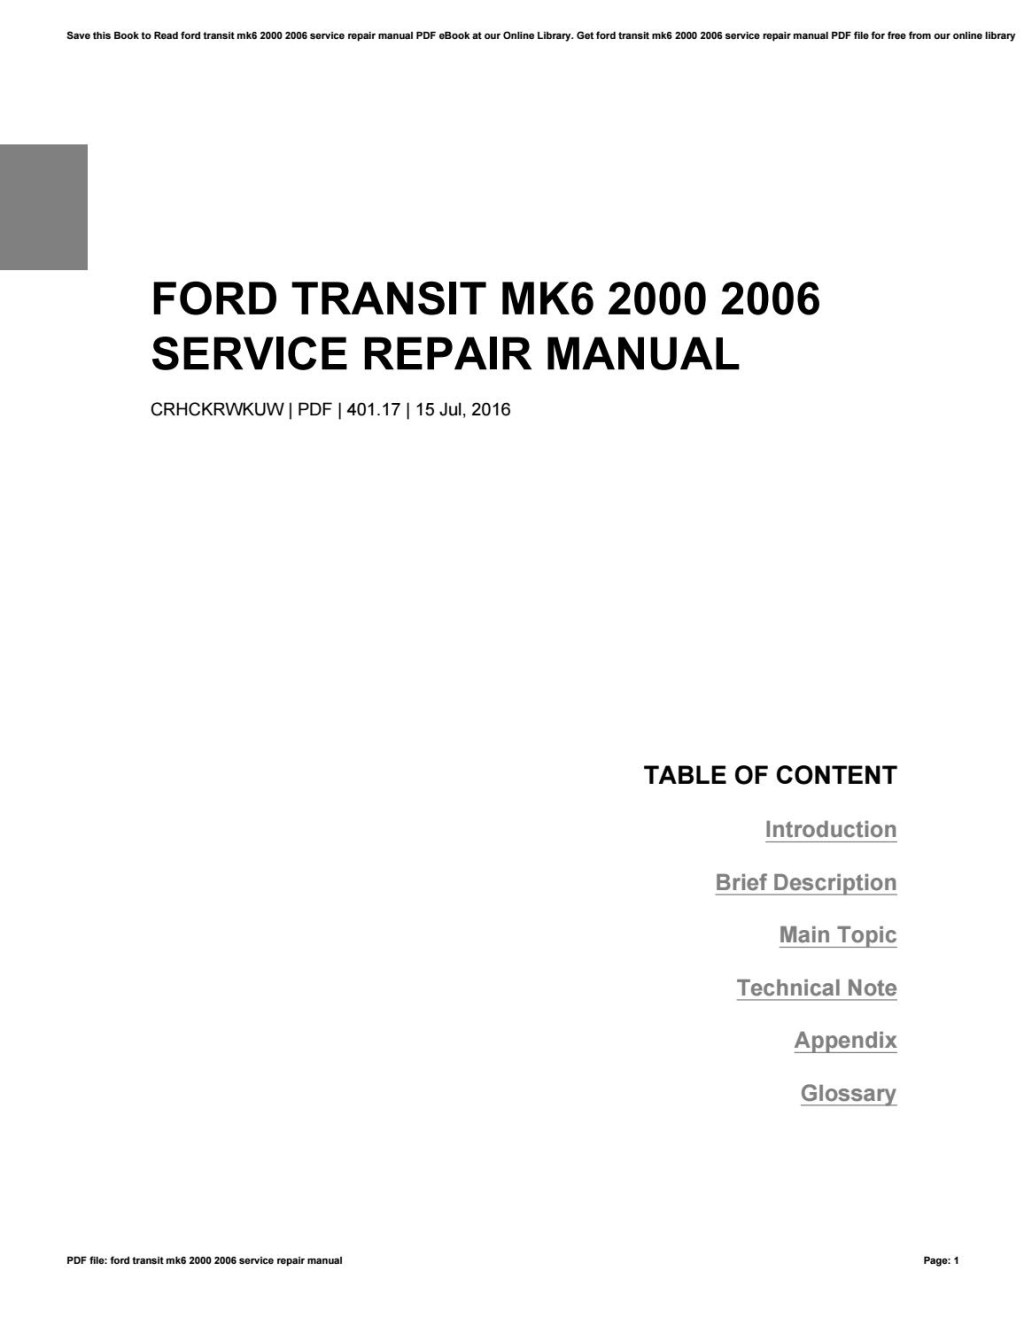 Picture of: Ford transit mk  200 service repair manual by sendu – Issuu